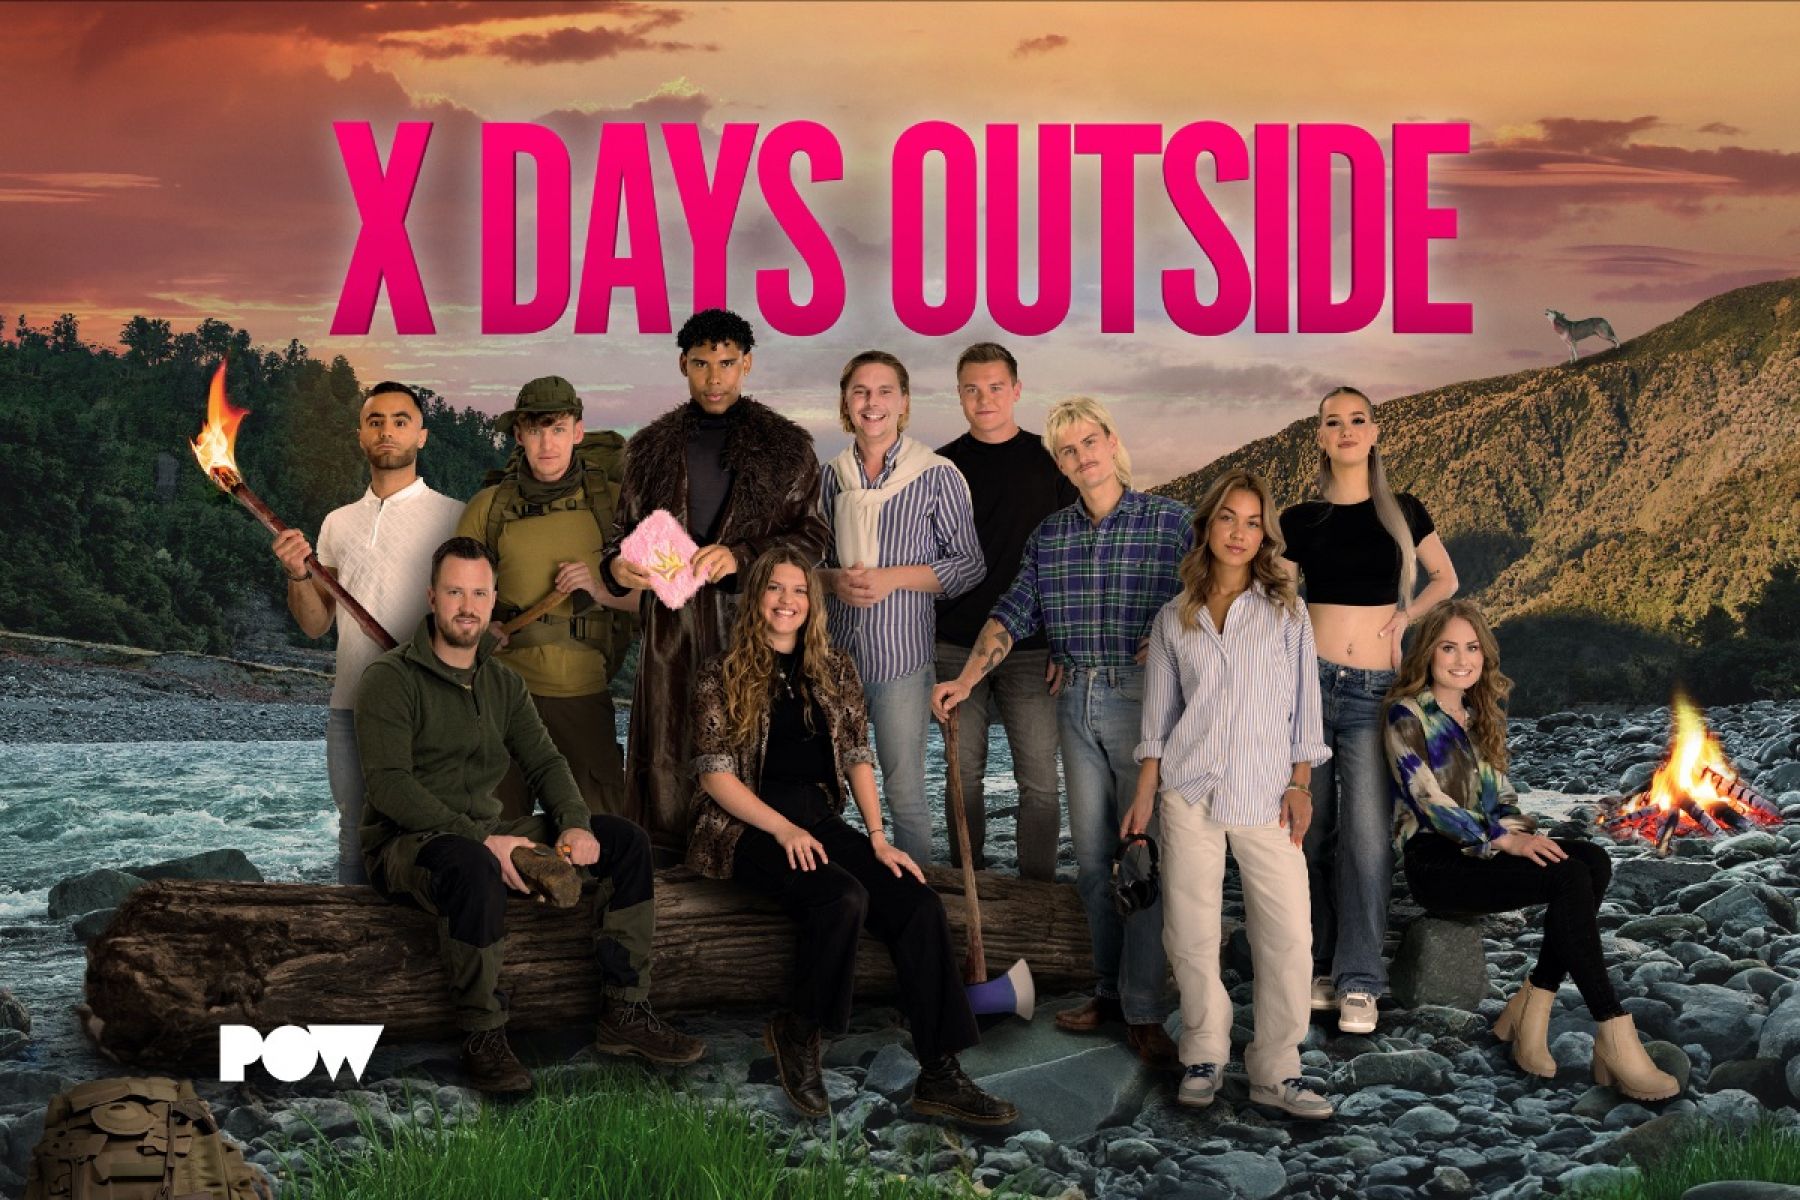 Nuova serie PowNed “X Days Outside”: riuscirà la generazione Z a sopravvivere nella natura selvaggia?